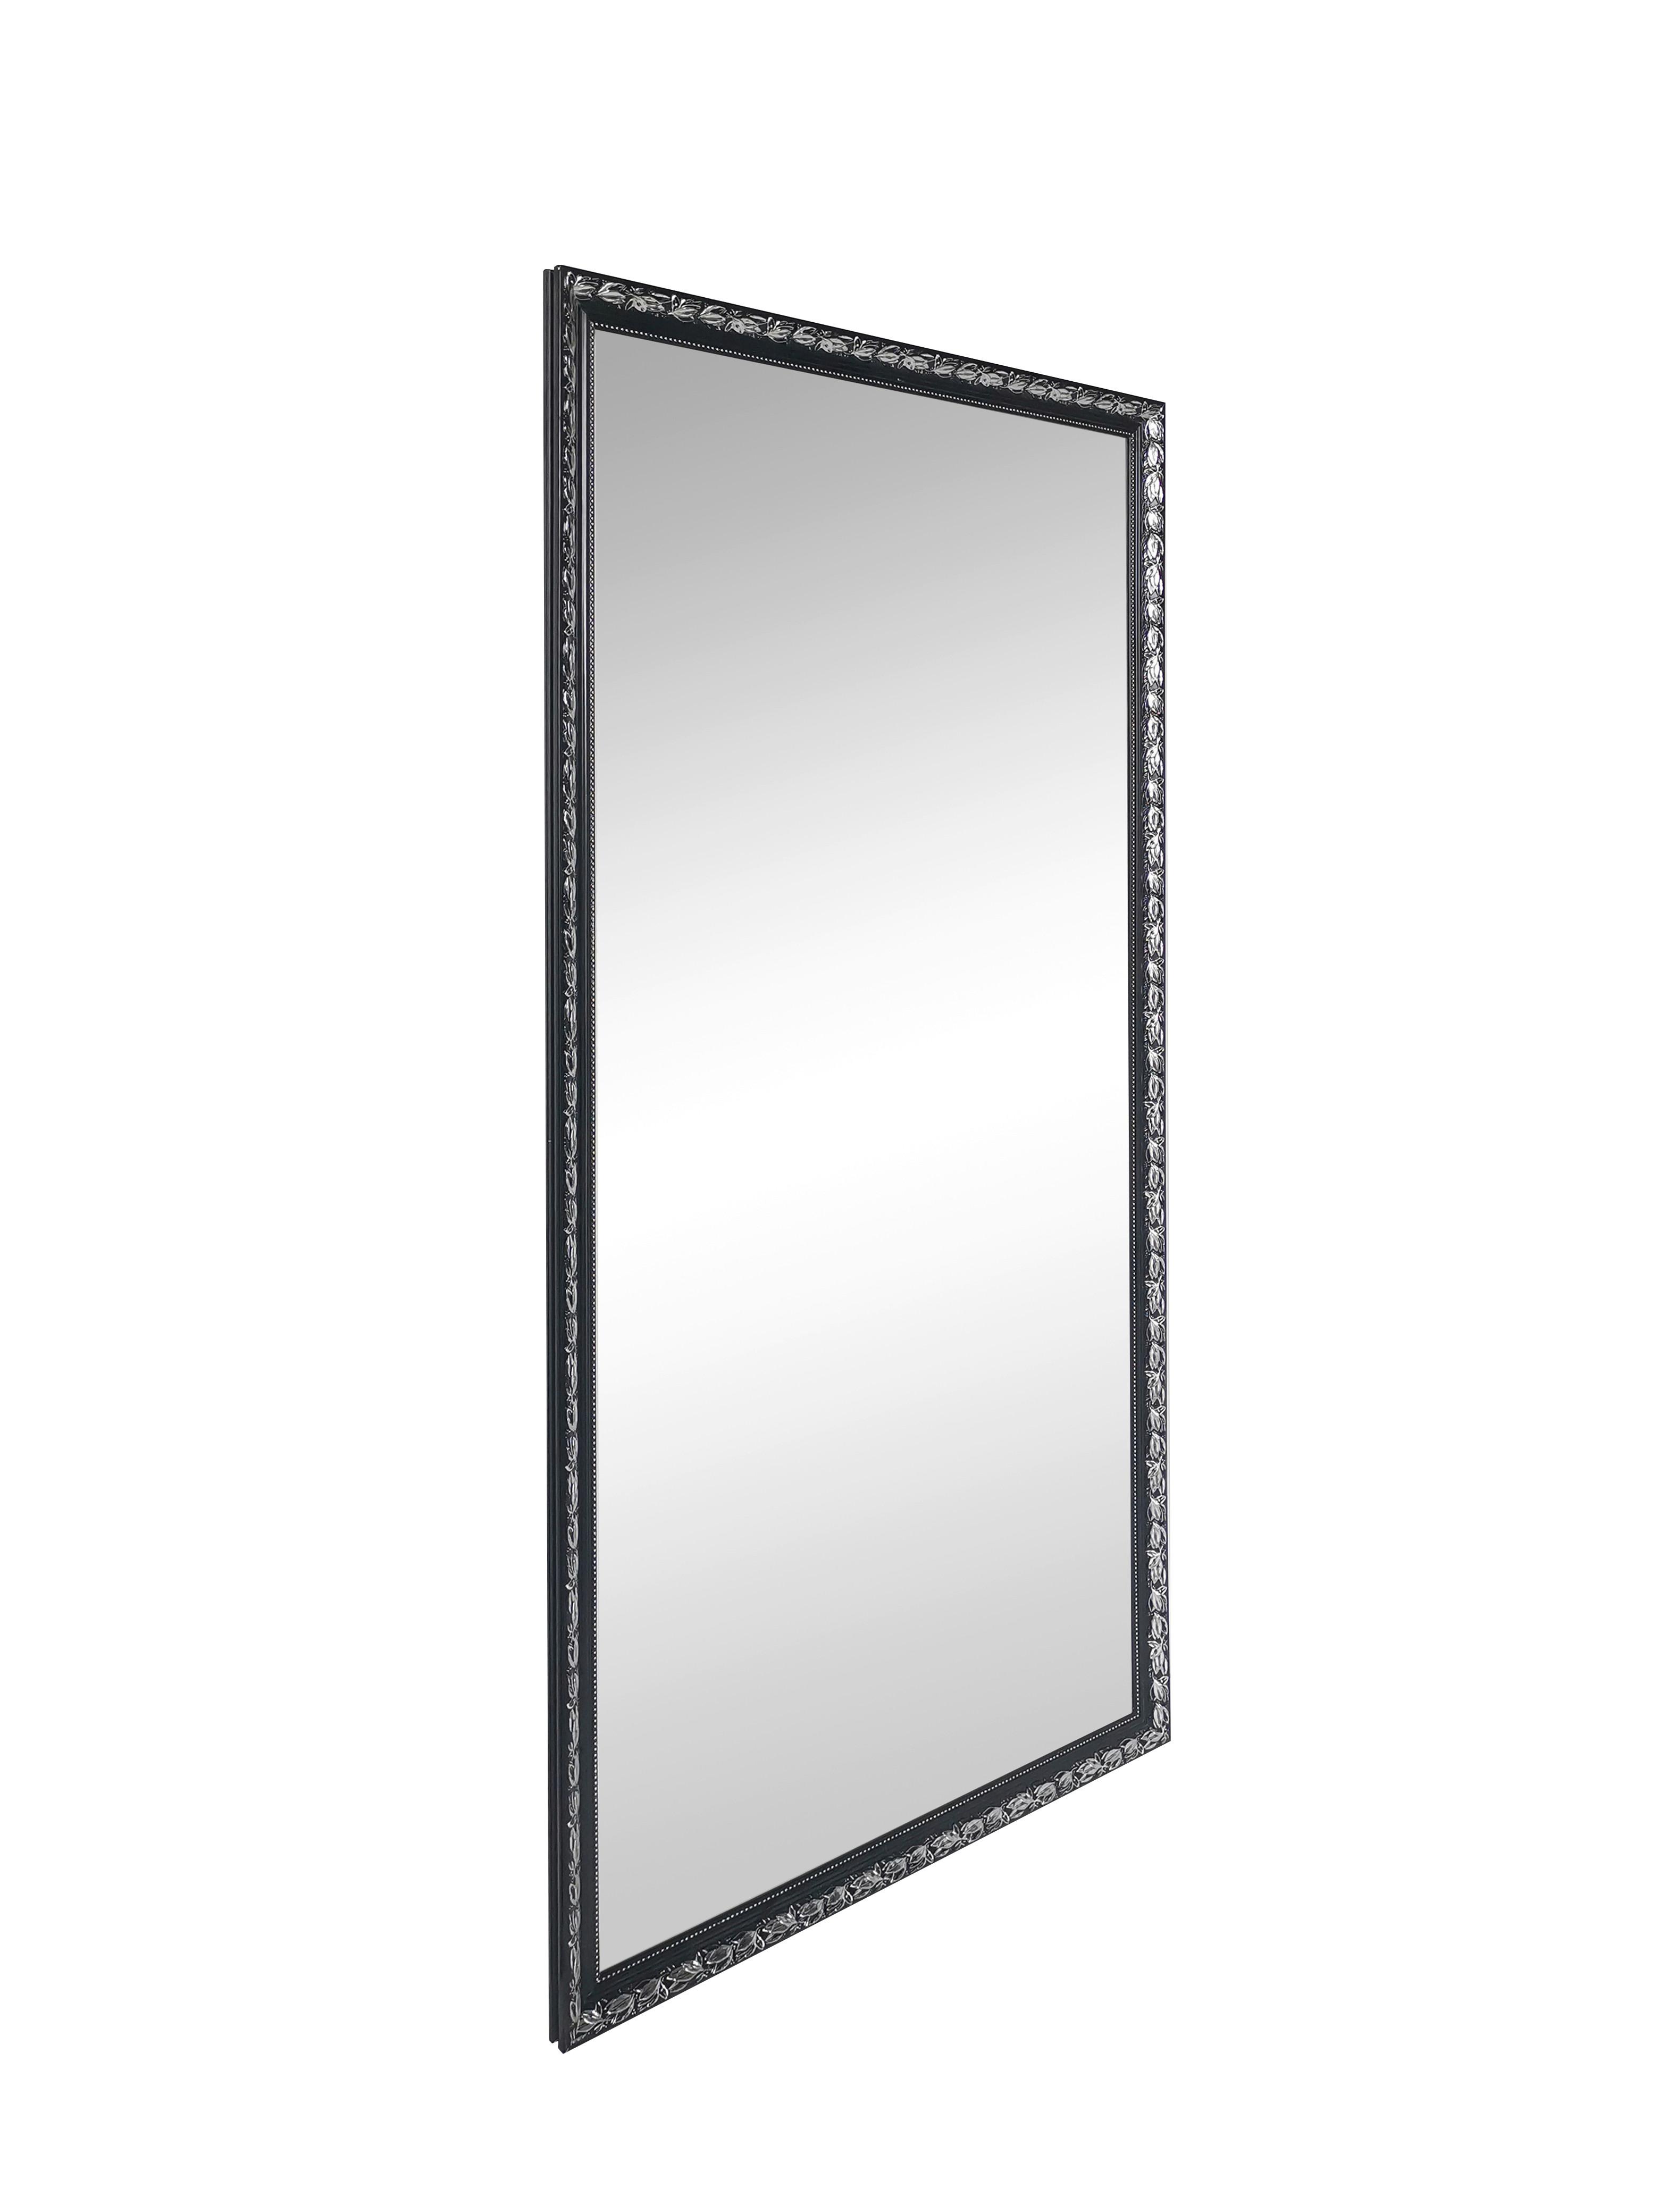 Wandspiegel in Schwarz/Silberfarben - Silberfarben/Schwarz, MODERN, Glas/Holz (100/200cm) - Premium Living